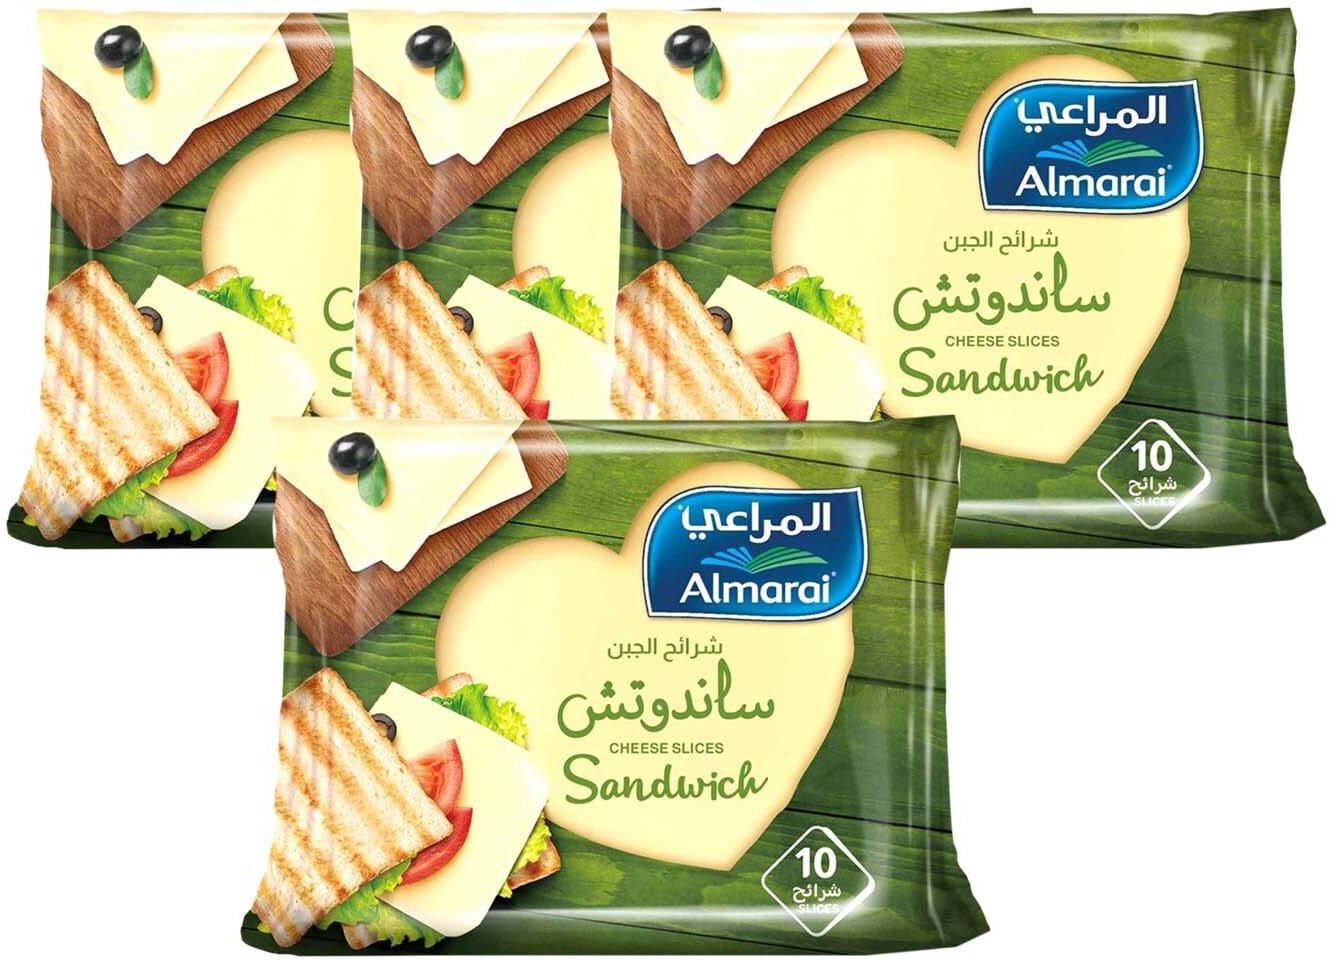 Almarai Sandwich Cheese Slices 200g Pack of 4